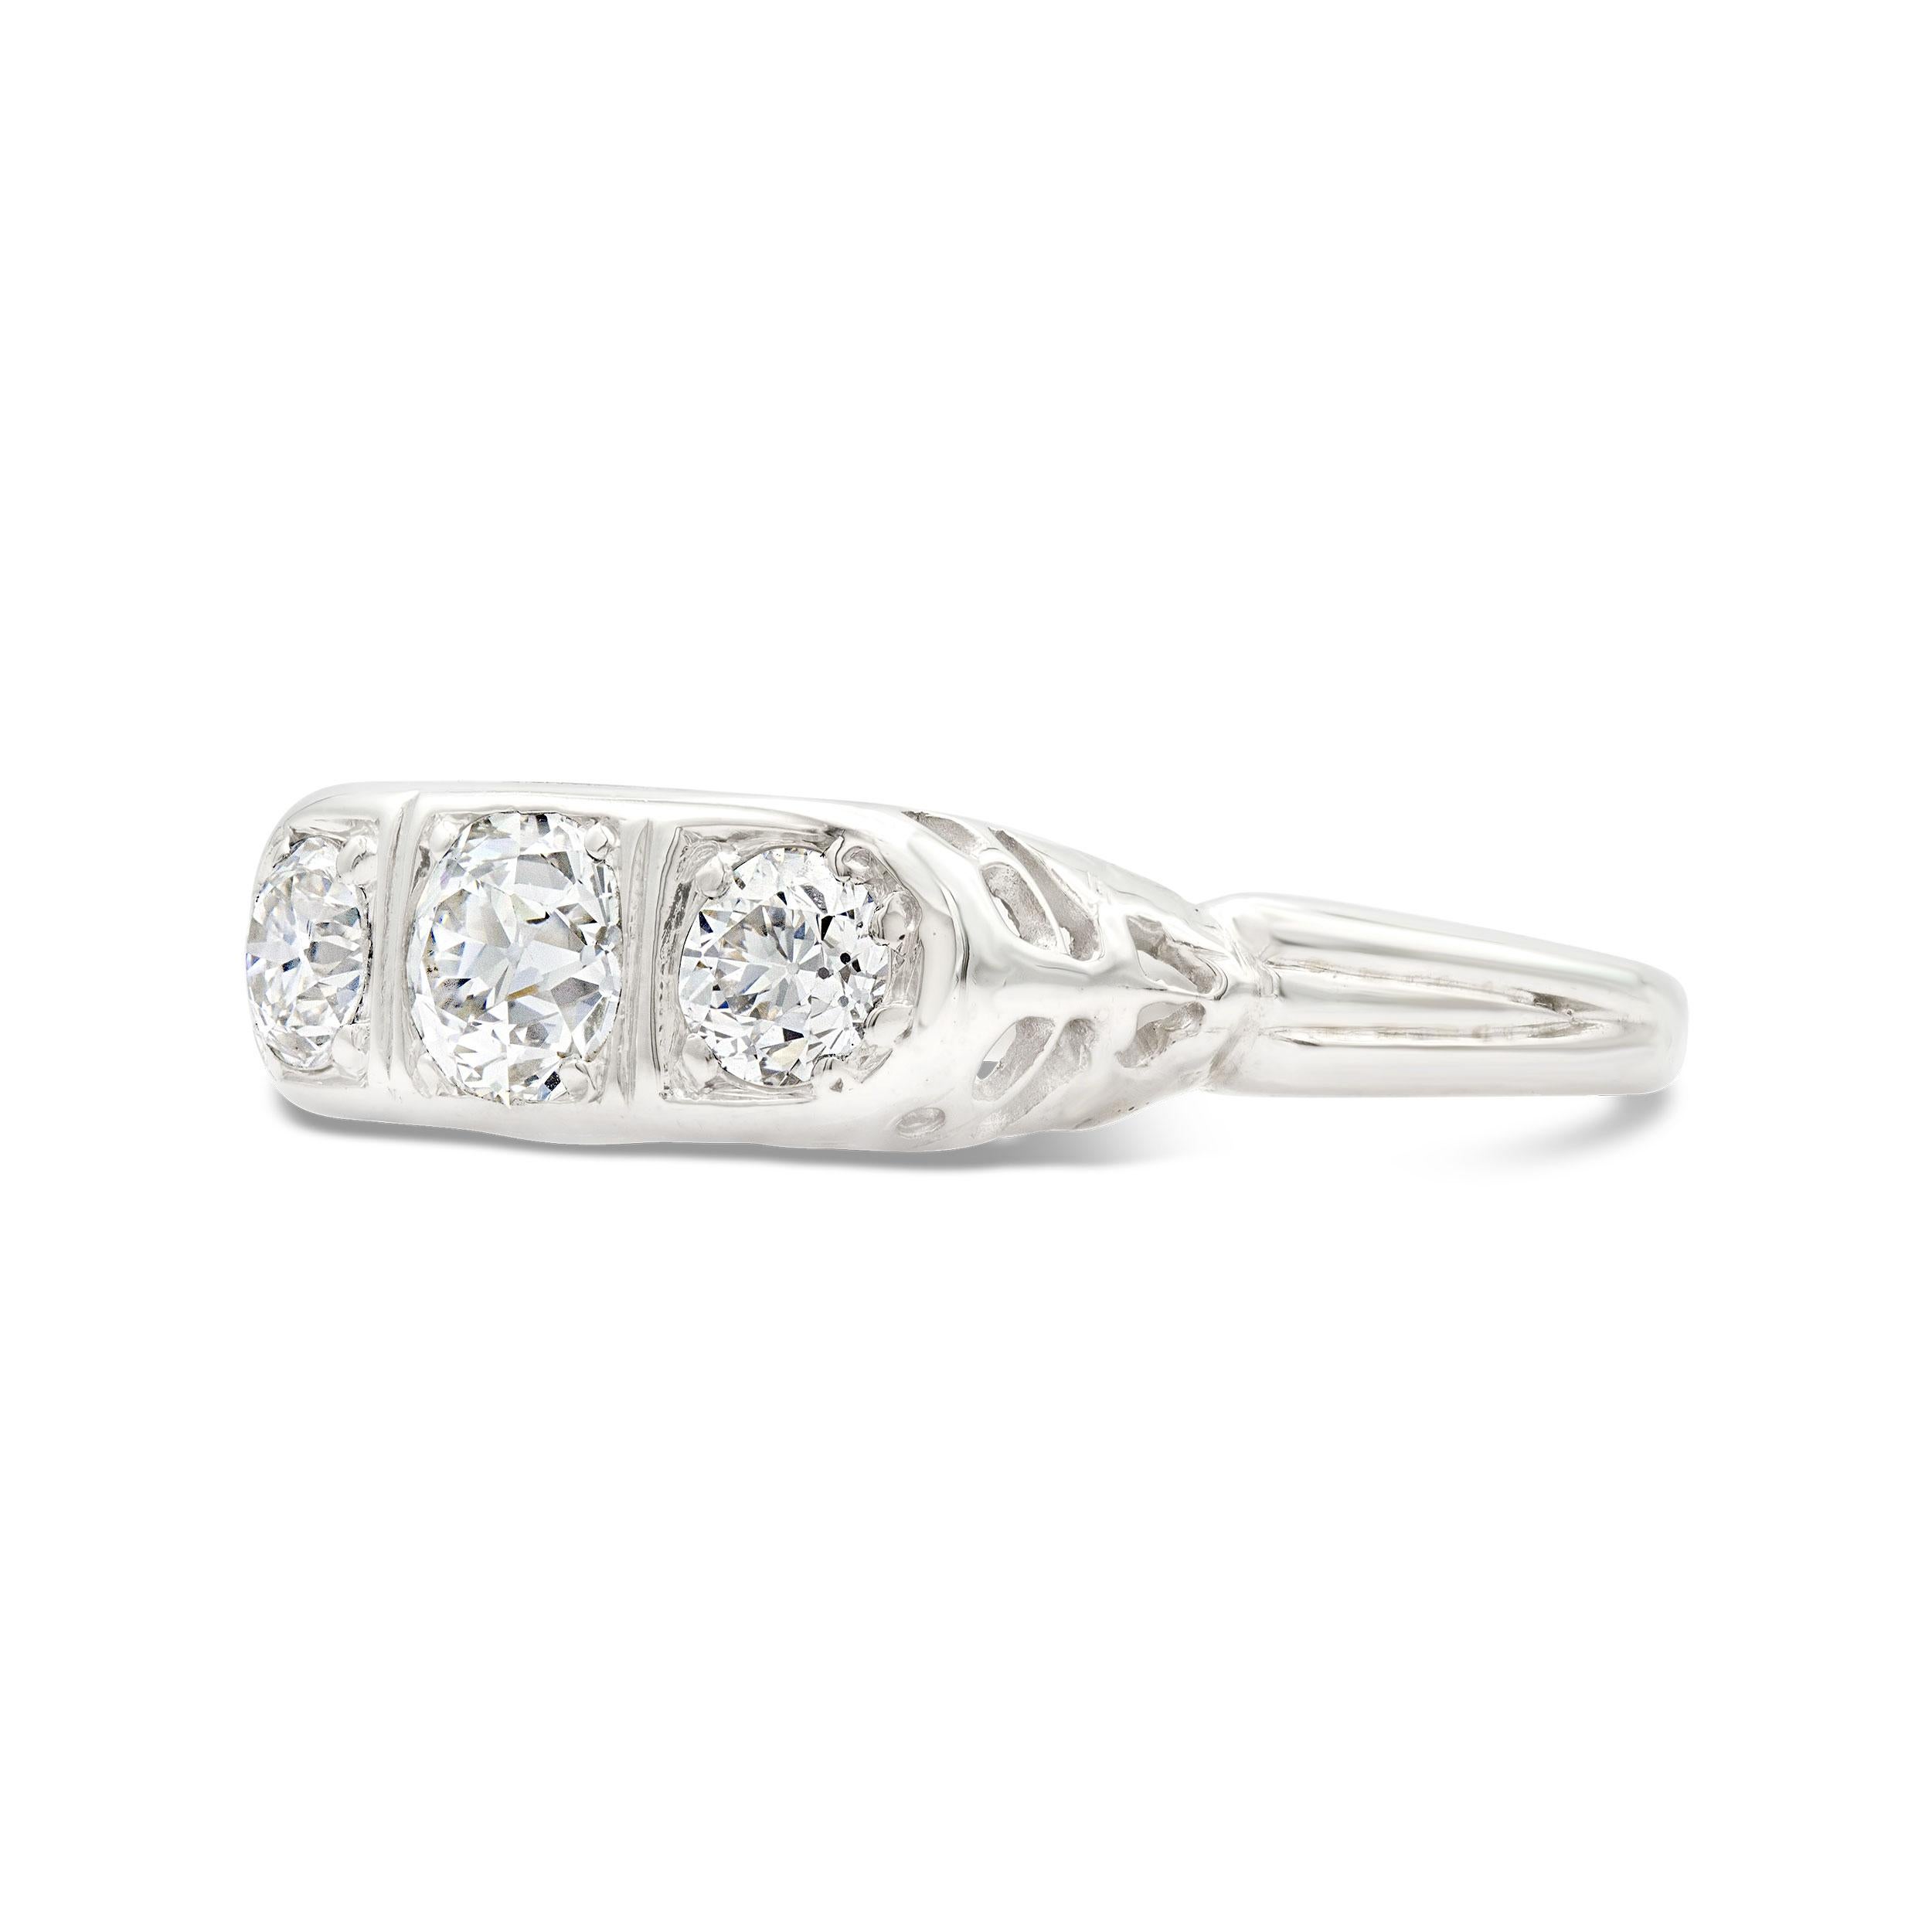 Ein überaus charmanter Diamant-Trilogie-Ring mit drei funkelnden Diamanten im alten europäischen Schliff mit einem Gesamtgewicht von 0,85 Karat. Die Galerie des Rings zeigt einzigartige filigrane Arbeiten, die von Hand in Platin gefertigt wurden.